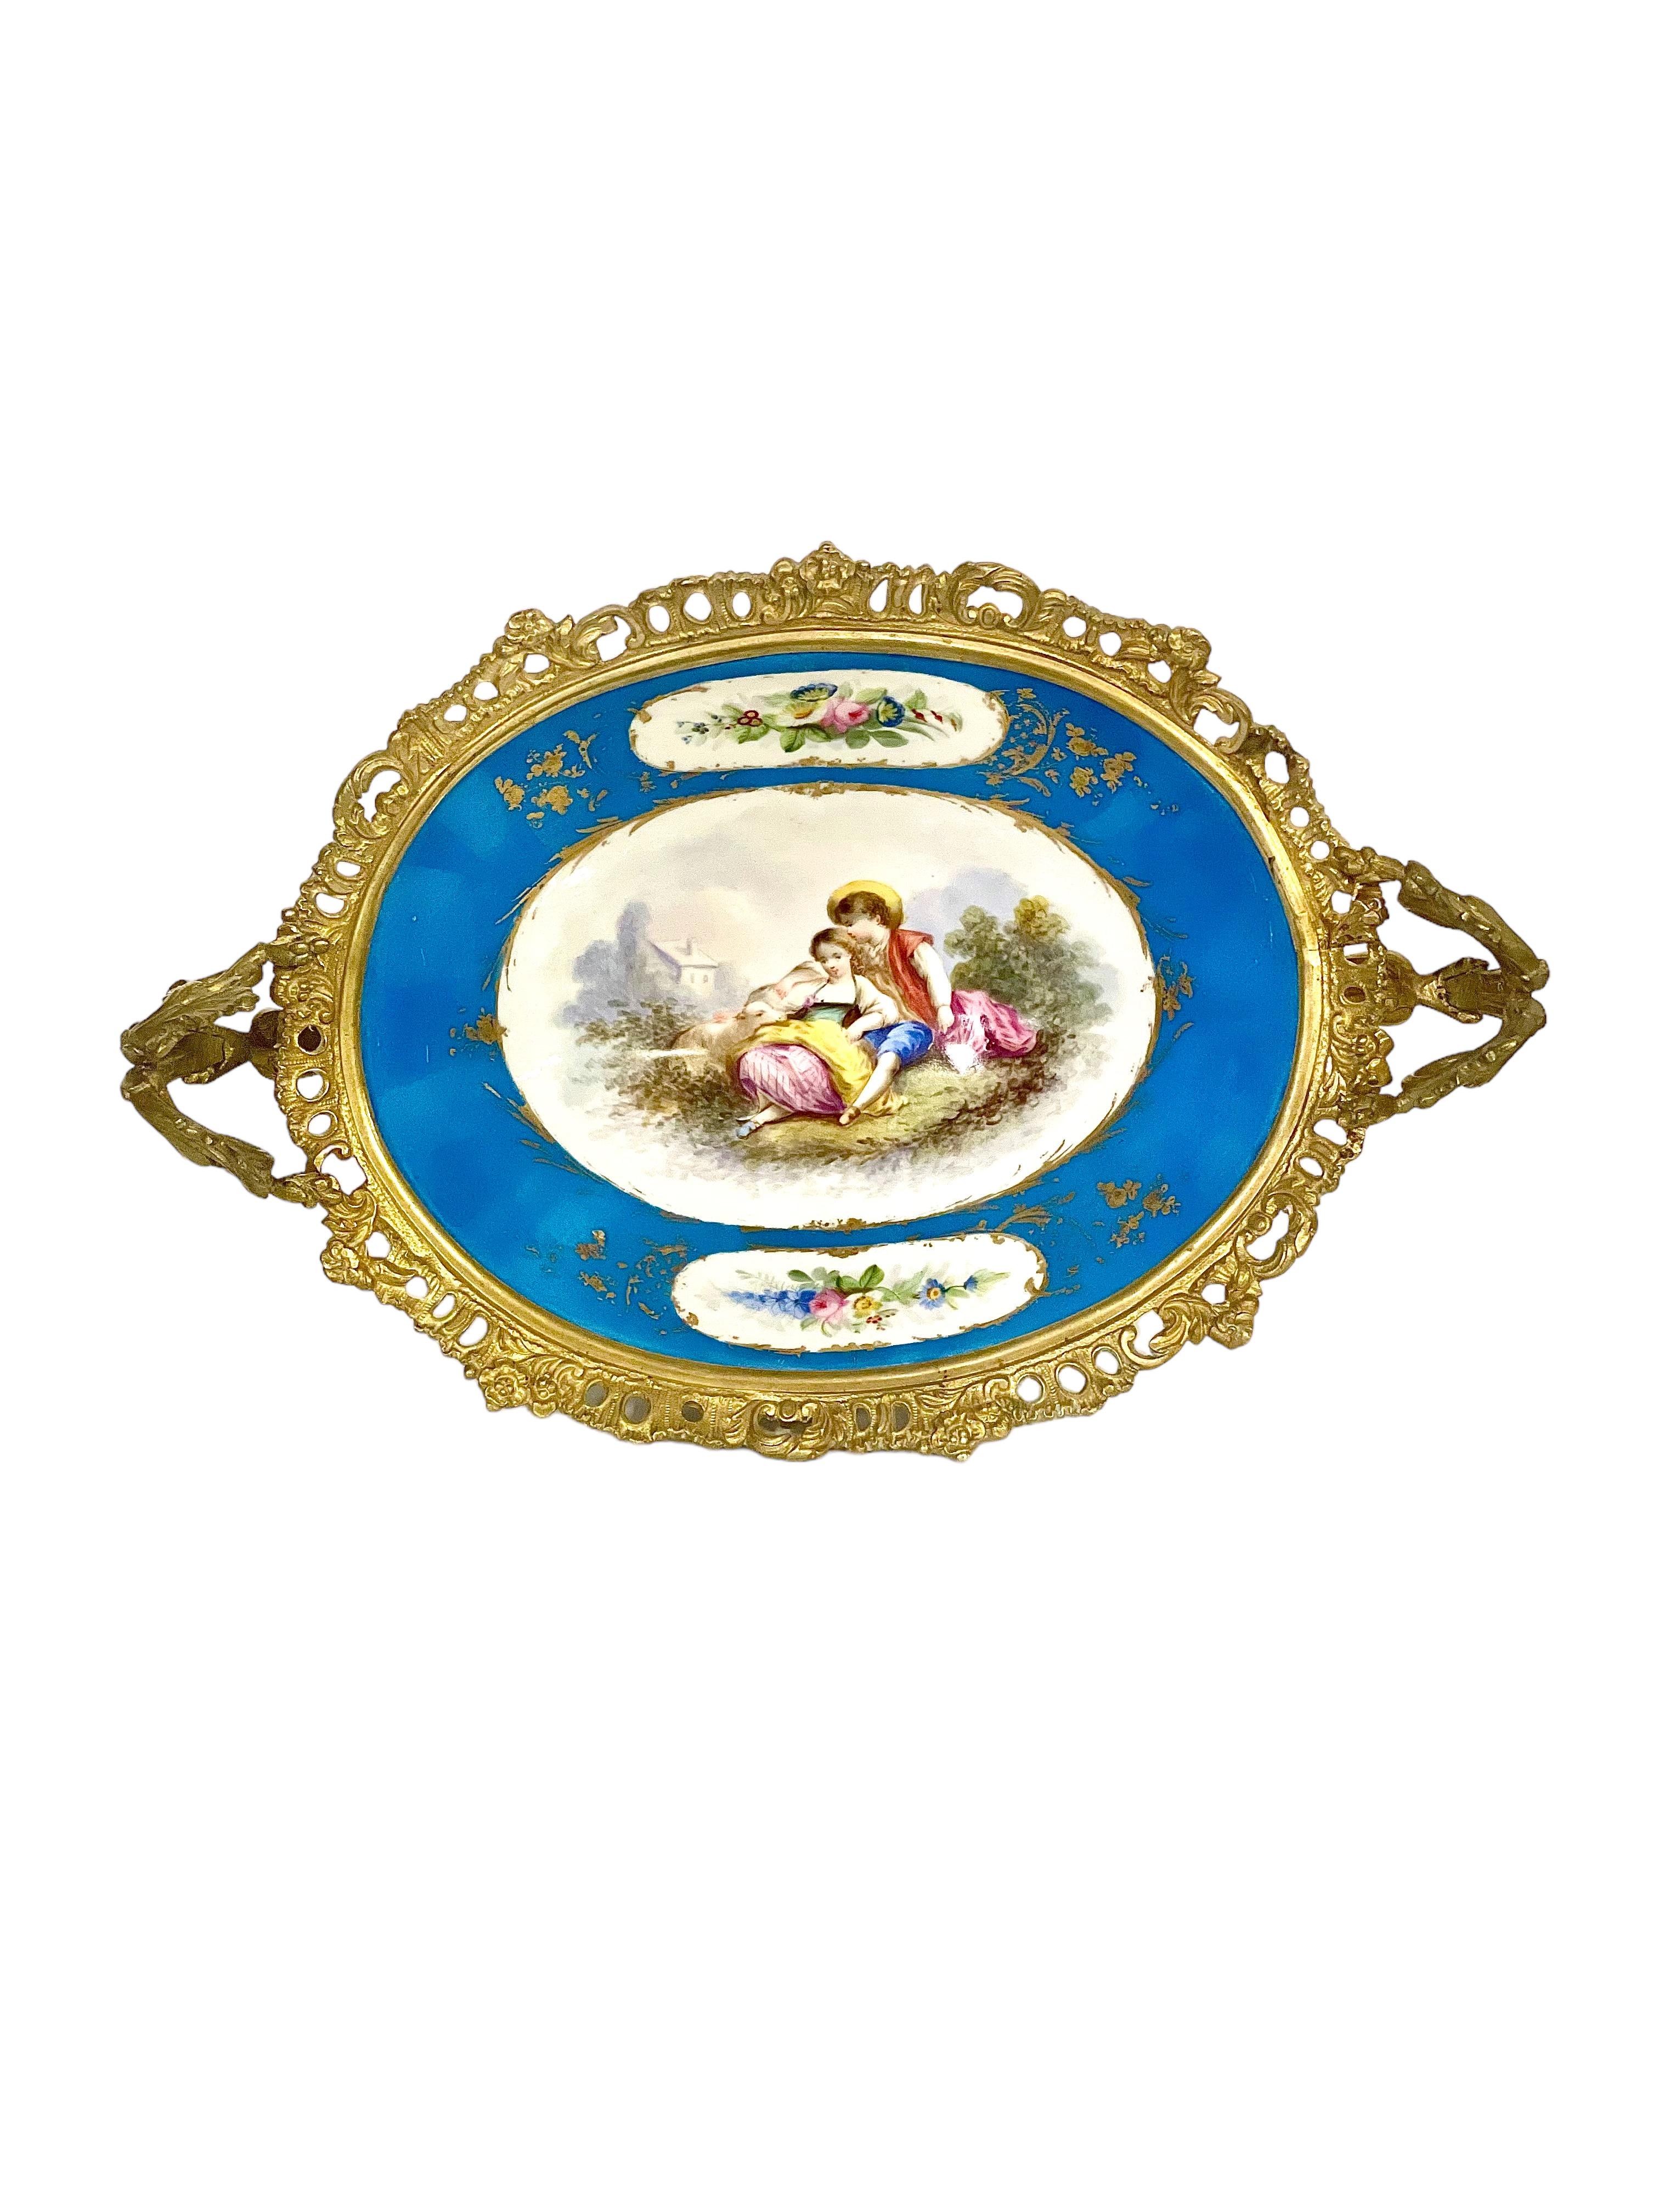 Ein exquisites Kompott oder Tafelaufsatz von Napoleon III. aus dem 19. Jahrhundert aus feinem Sèvres-Porzellan und vergoldeter Bronze. Das Innere dieser fabelhaften Schale wurde von Hand mit einer idyllischen, romantischen Szene bemalt, die von